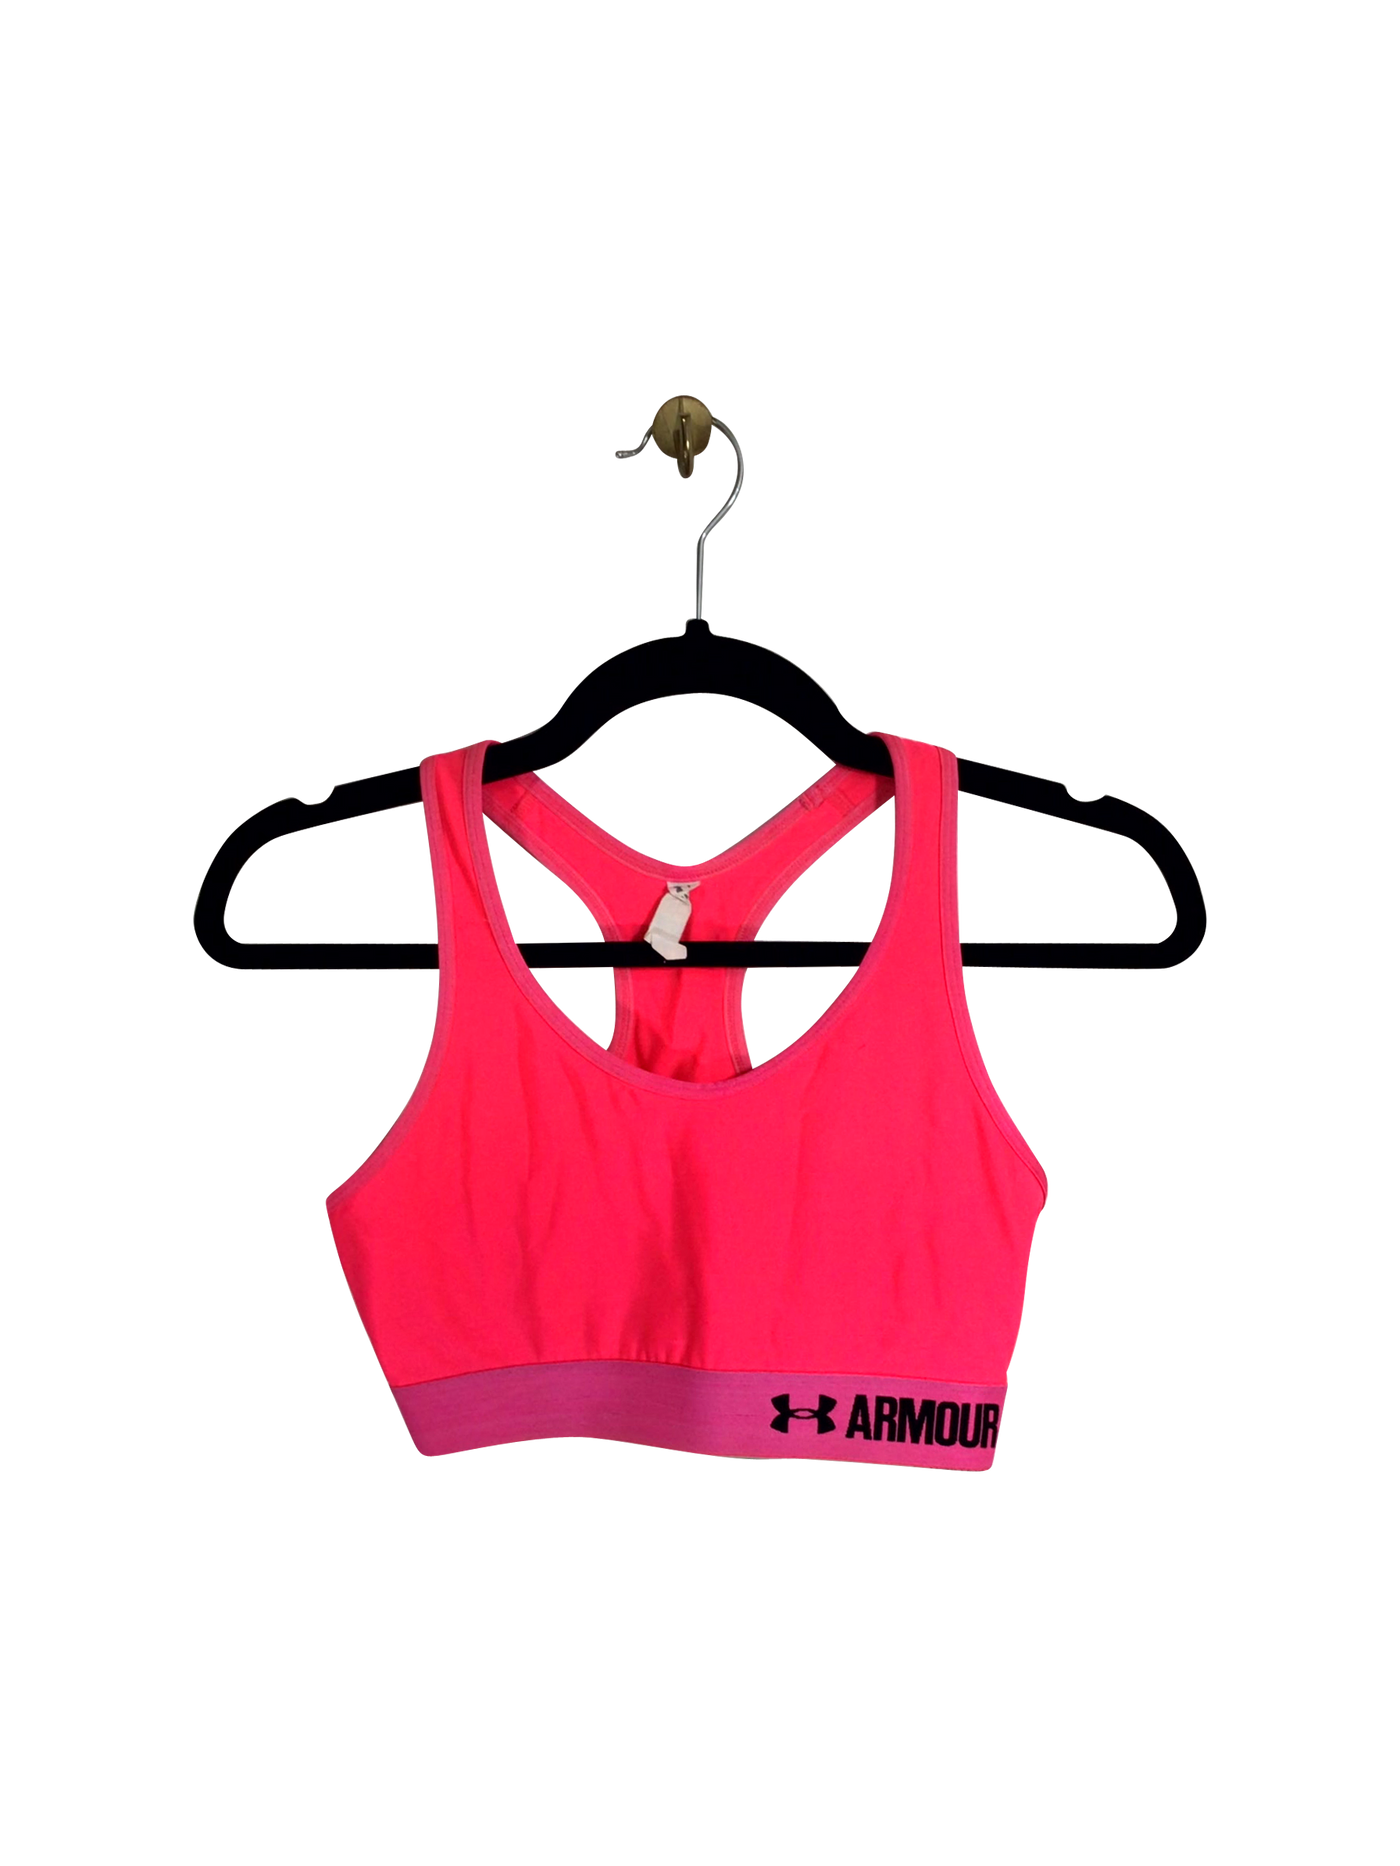 UNDER ARMOUR Activewear Top Regular fit in Pink - Size M | 11.25 $ KOOP